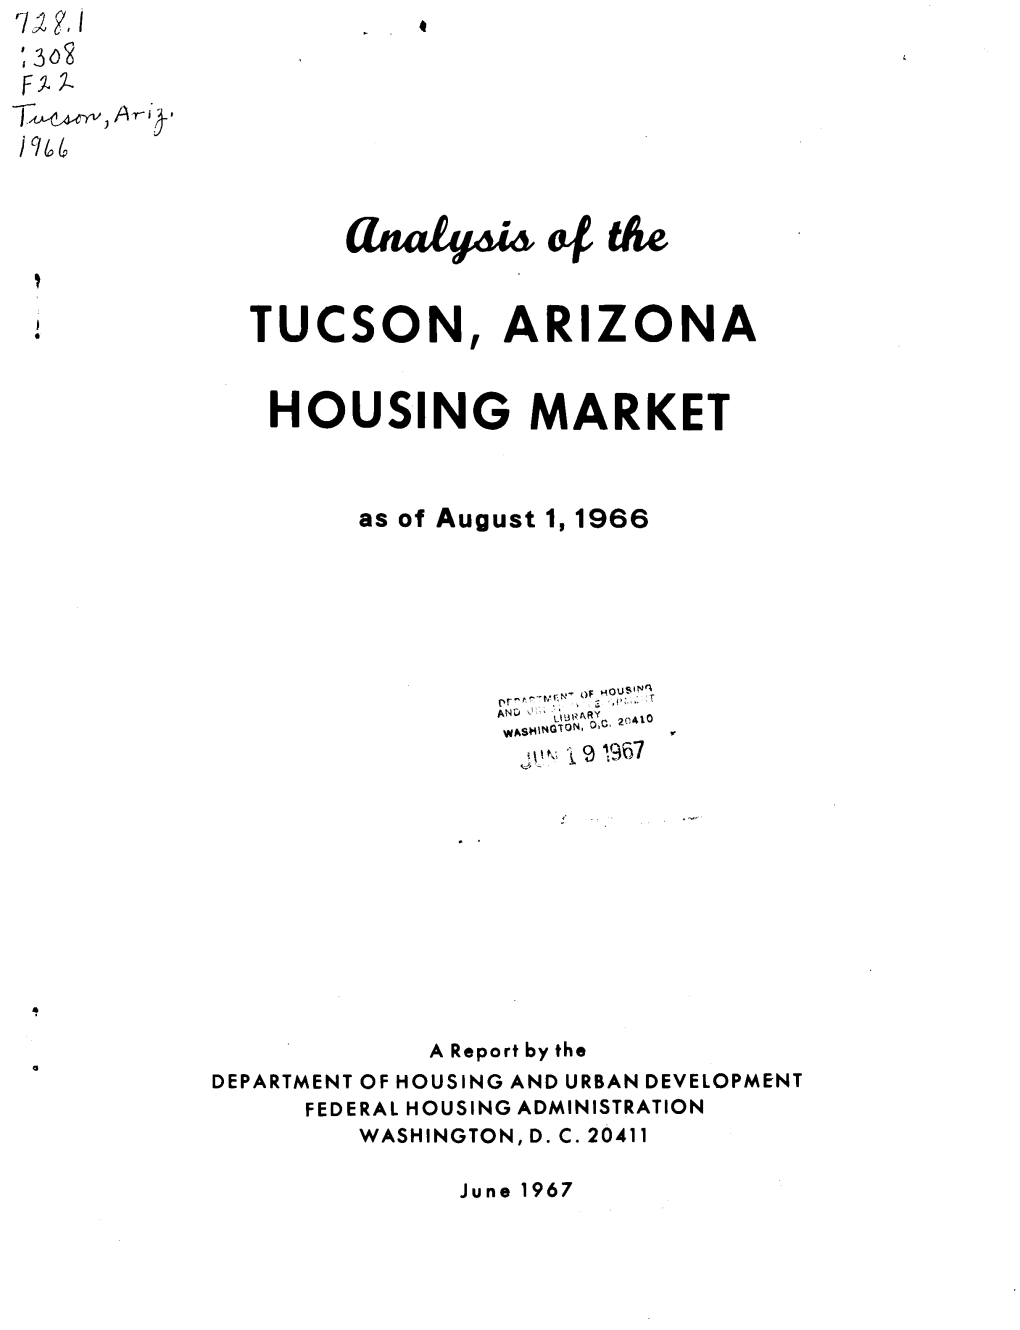 Analysis of the Tucson, Arizona Housing Market